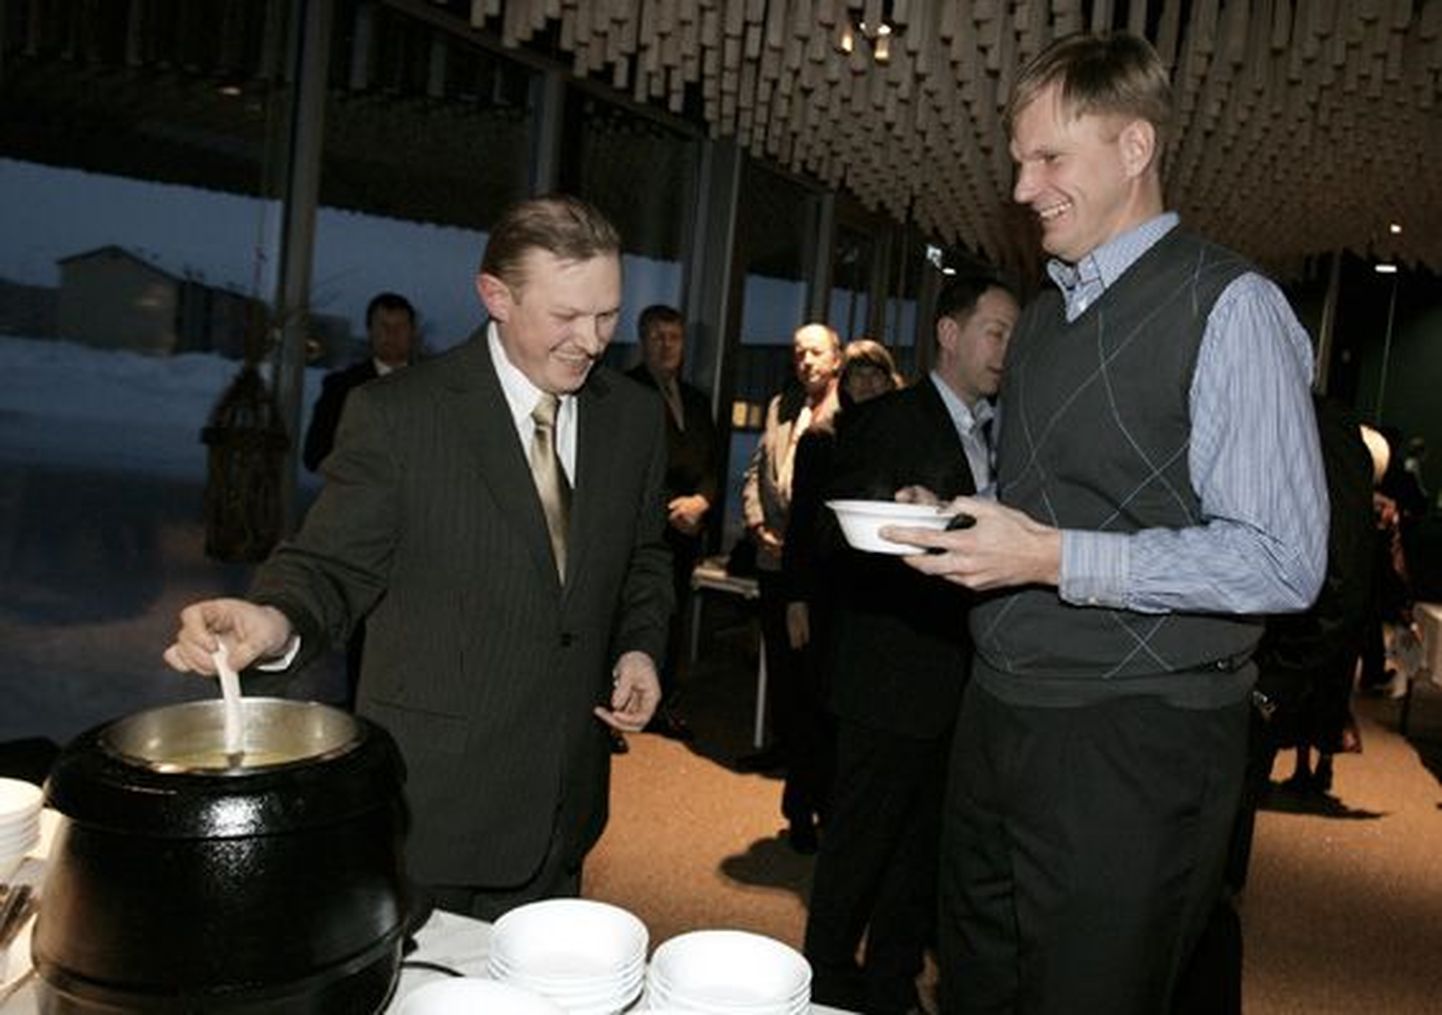 Aasta isikuteo auhinna võitnud Urmas Lindlo pakub endatehtud suppi oma kõige kõvemale konkurendile Jaanus Lekile.